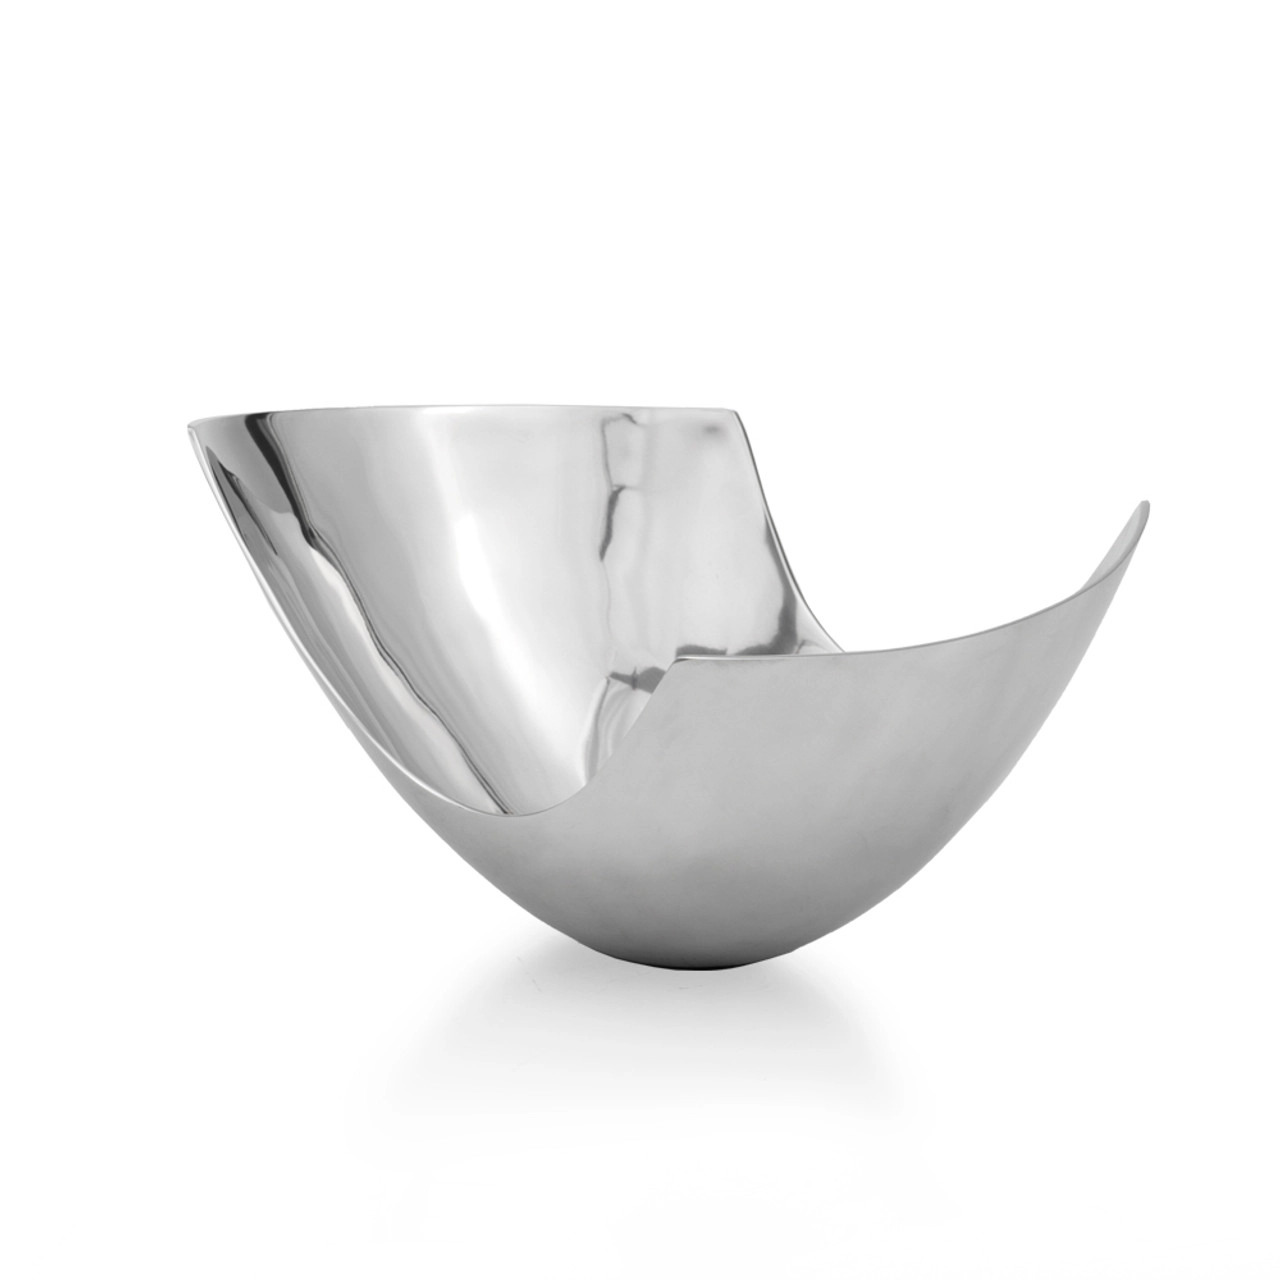 12" Mod Aluminum Scoop Centerpiece Bowl